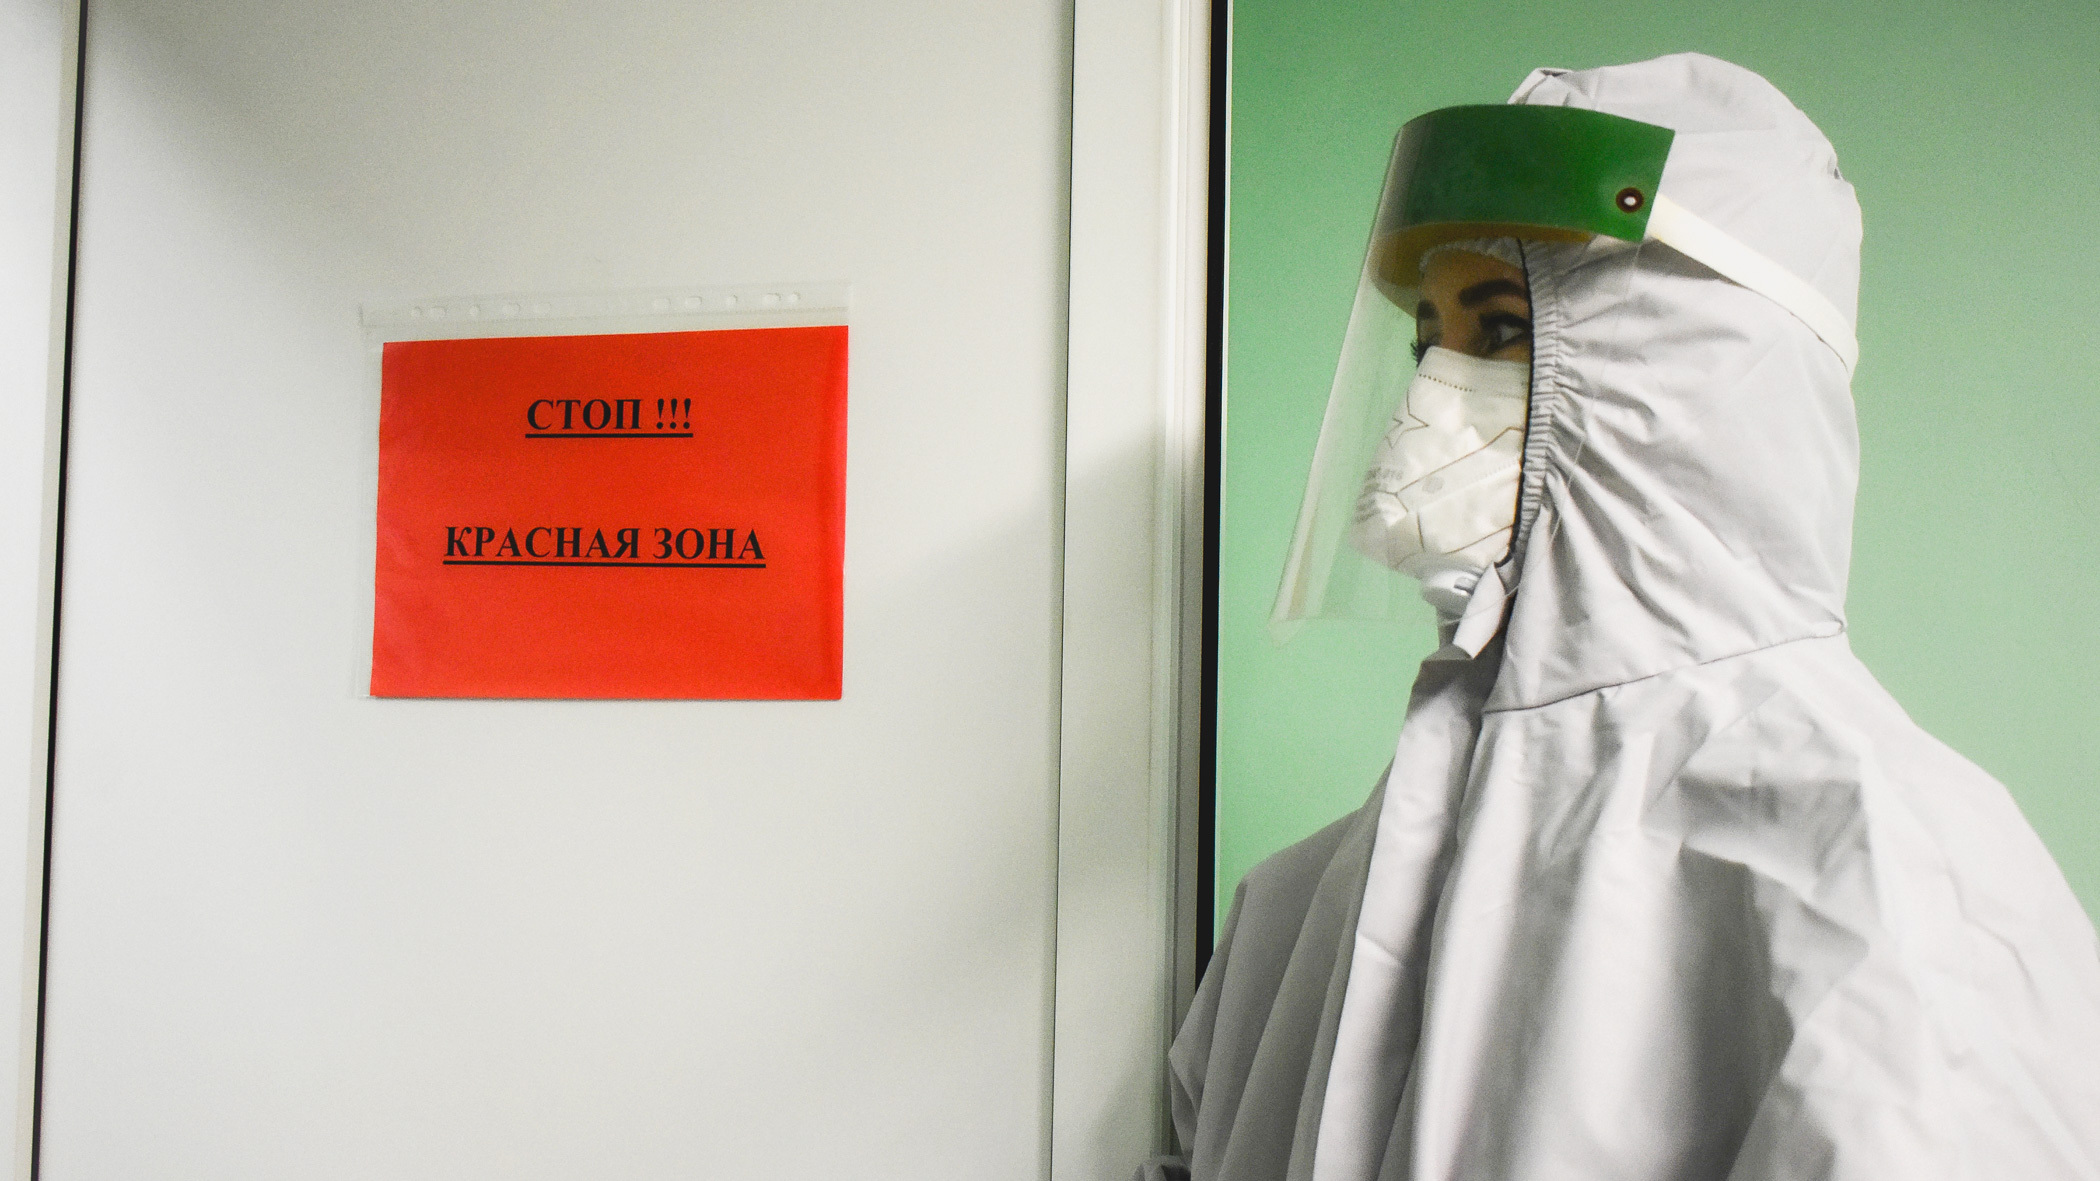 Оперштаб перестал публиковать данные о заболеваемости COVID-19 в Новосибирске